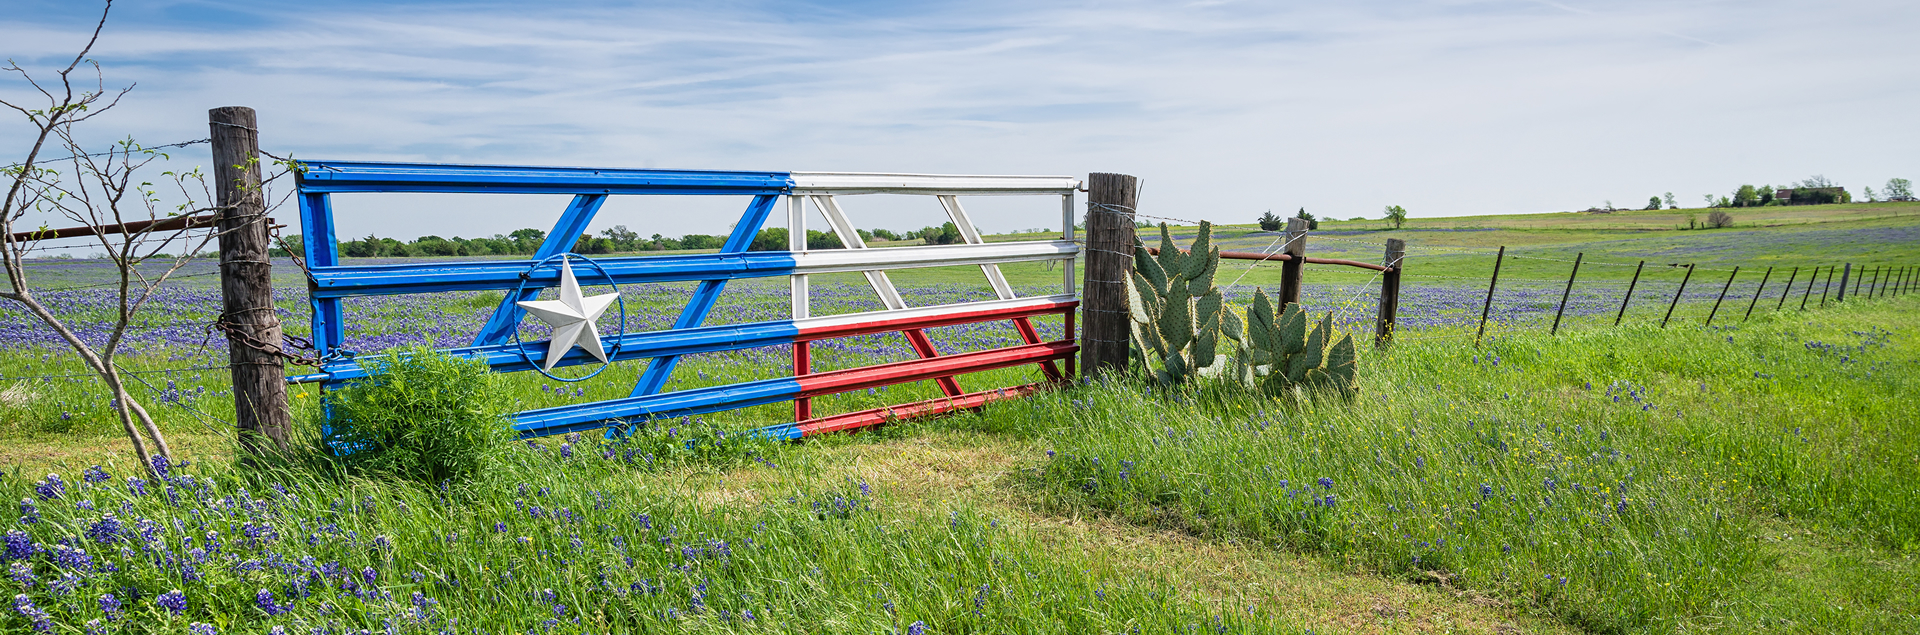 Farm gate in Texas